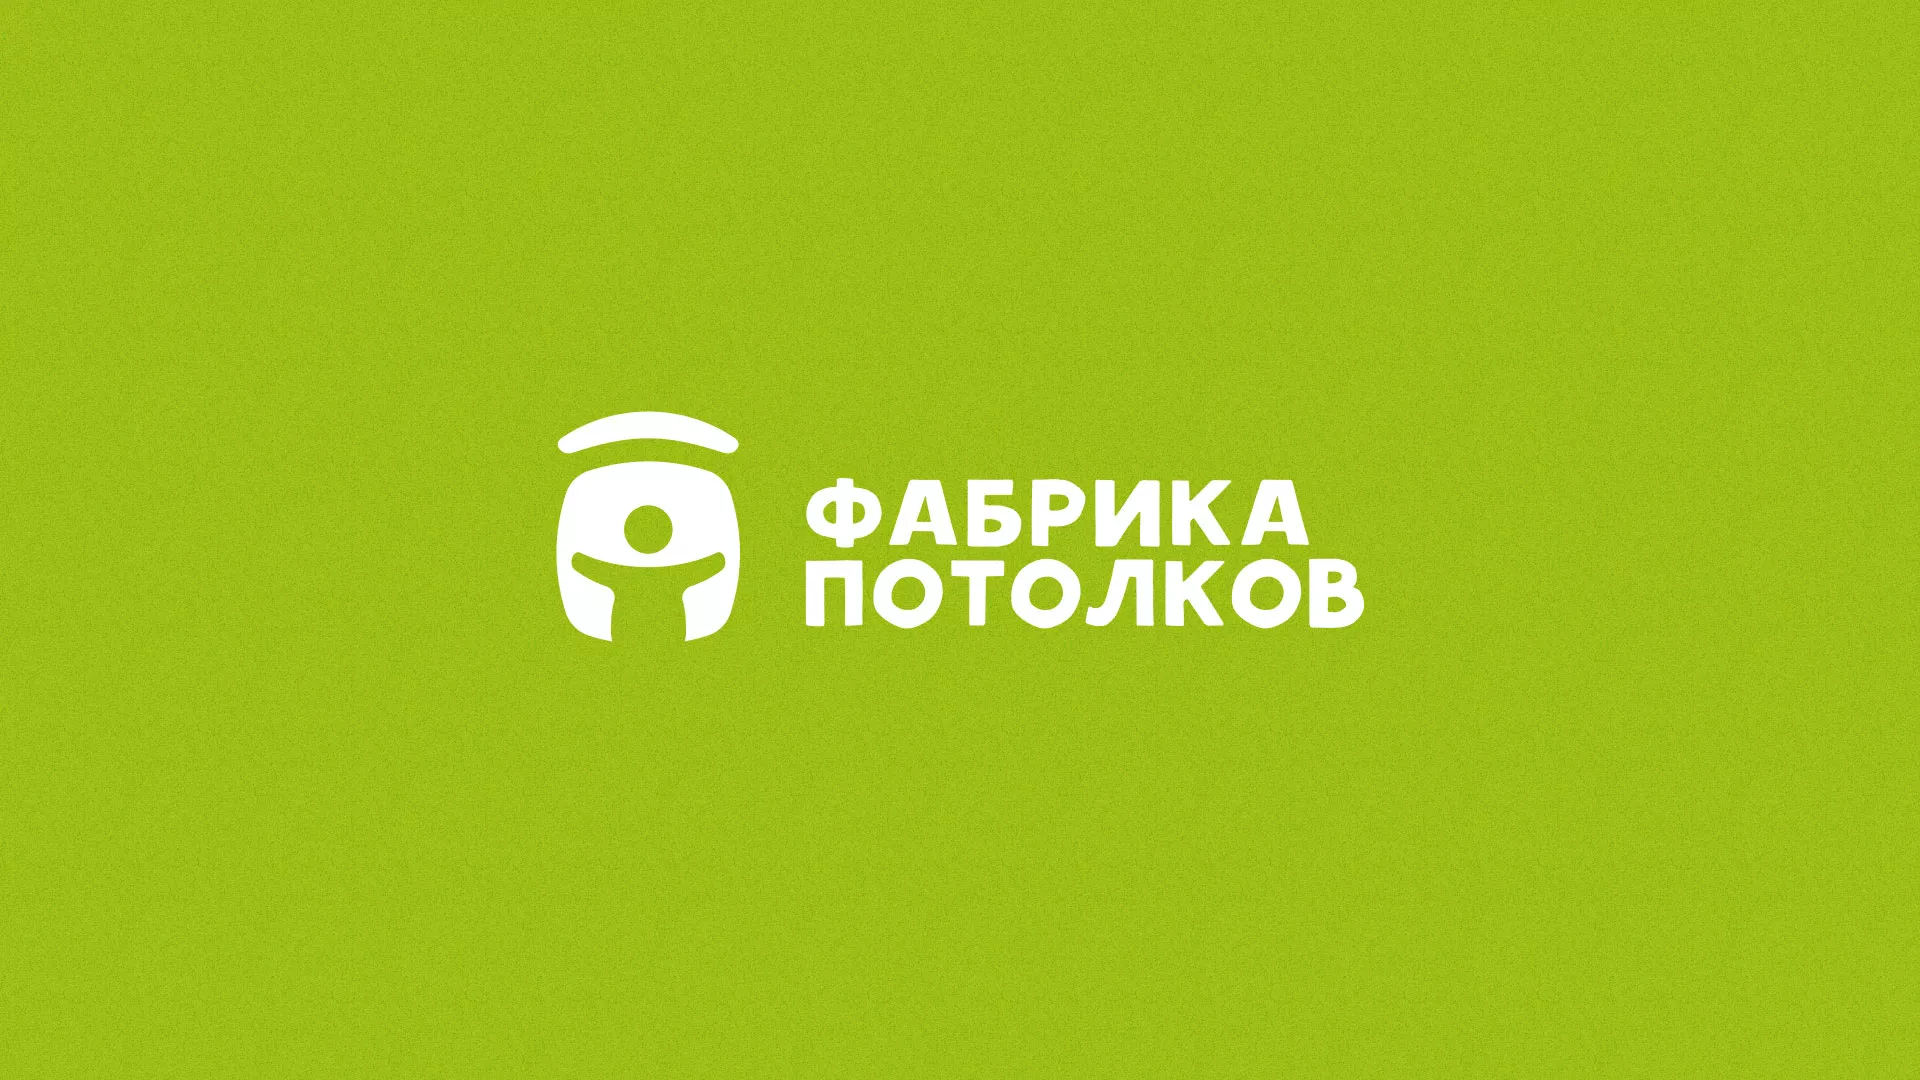 Разработка логотипа для производства натяжных потолков в Ладушкине